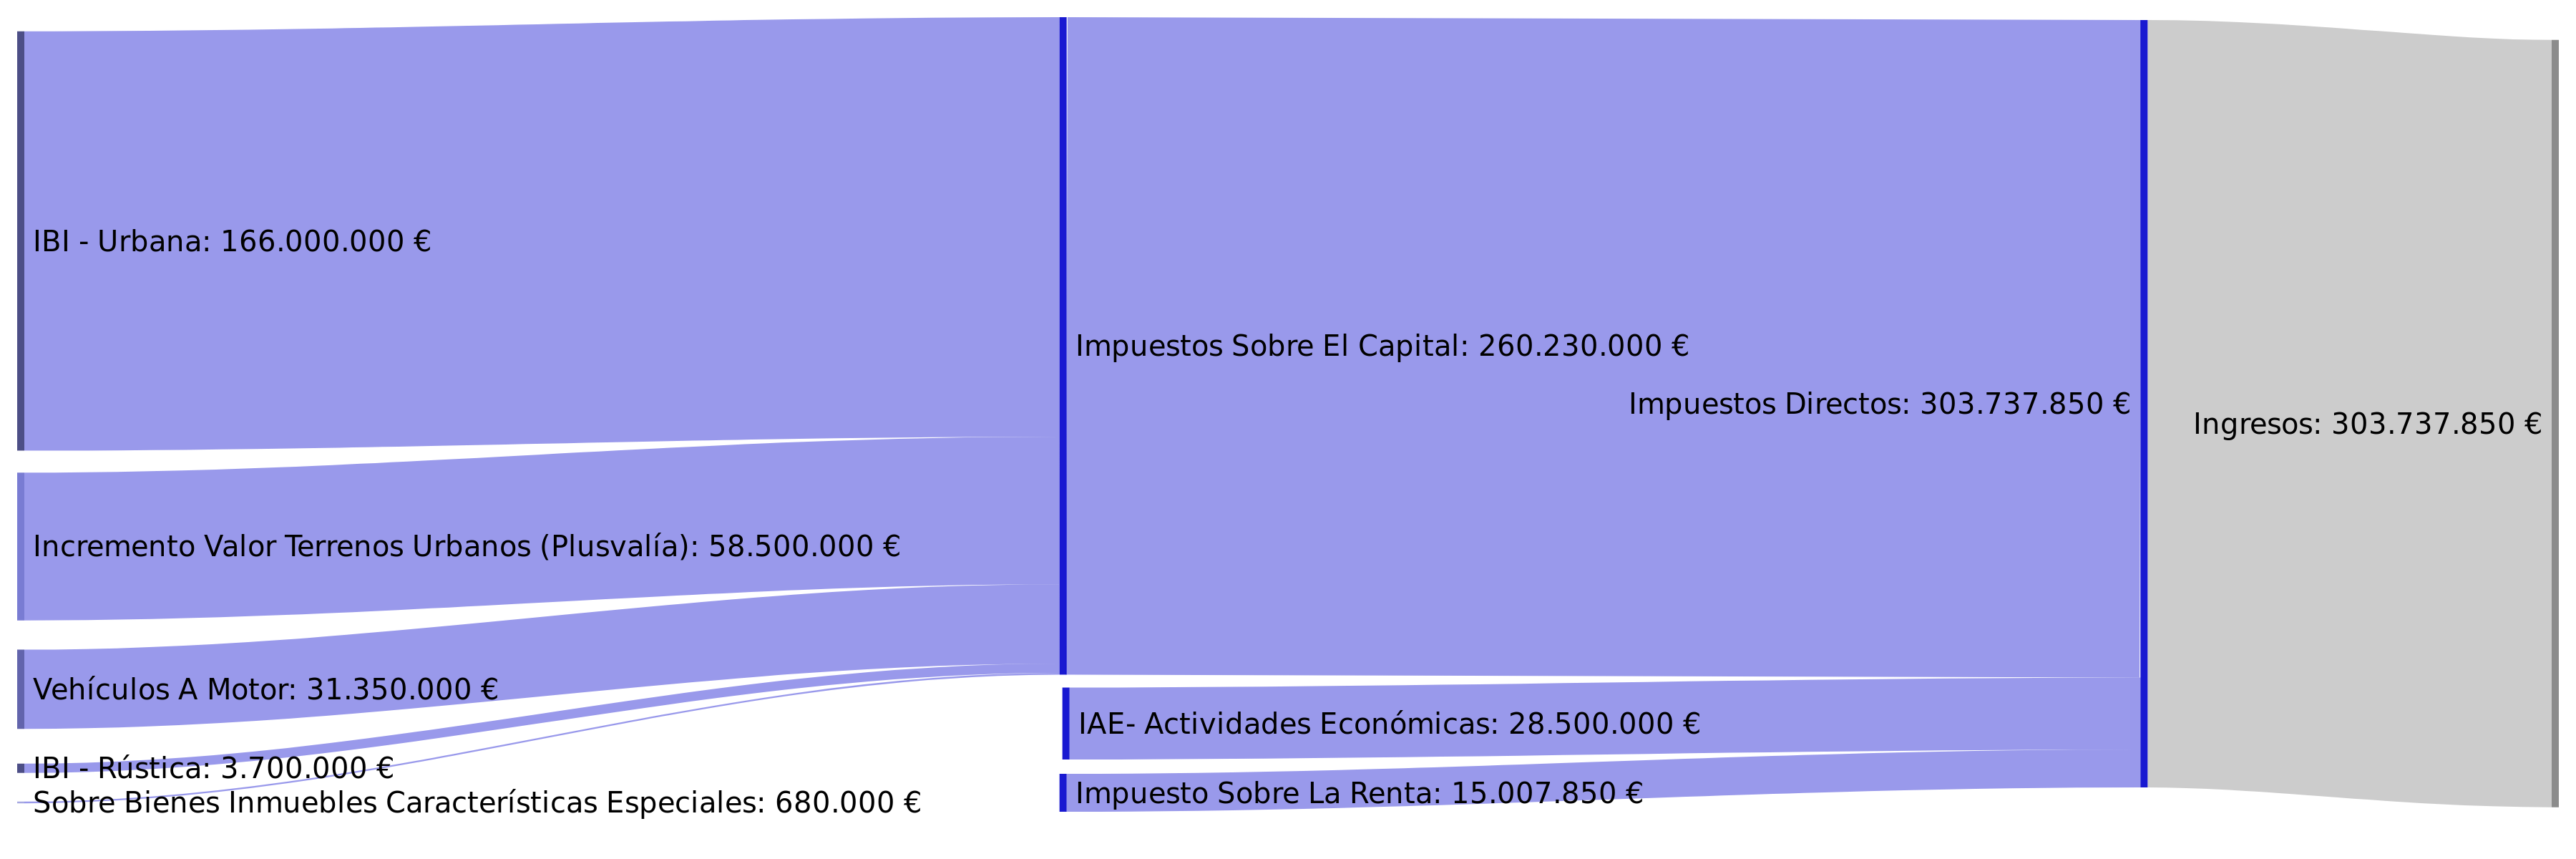 ingresos por impuestos directos_3600x1200